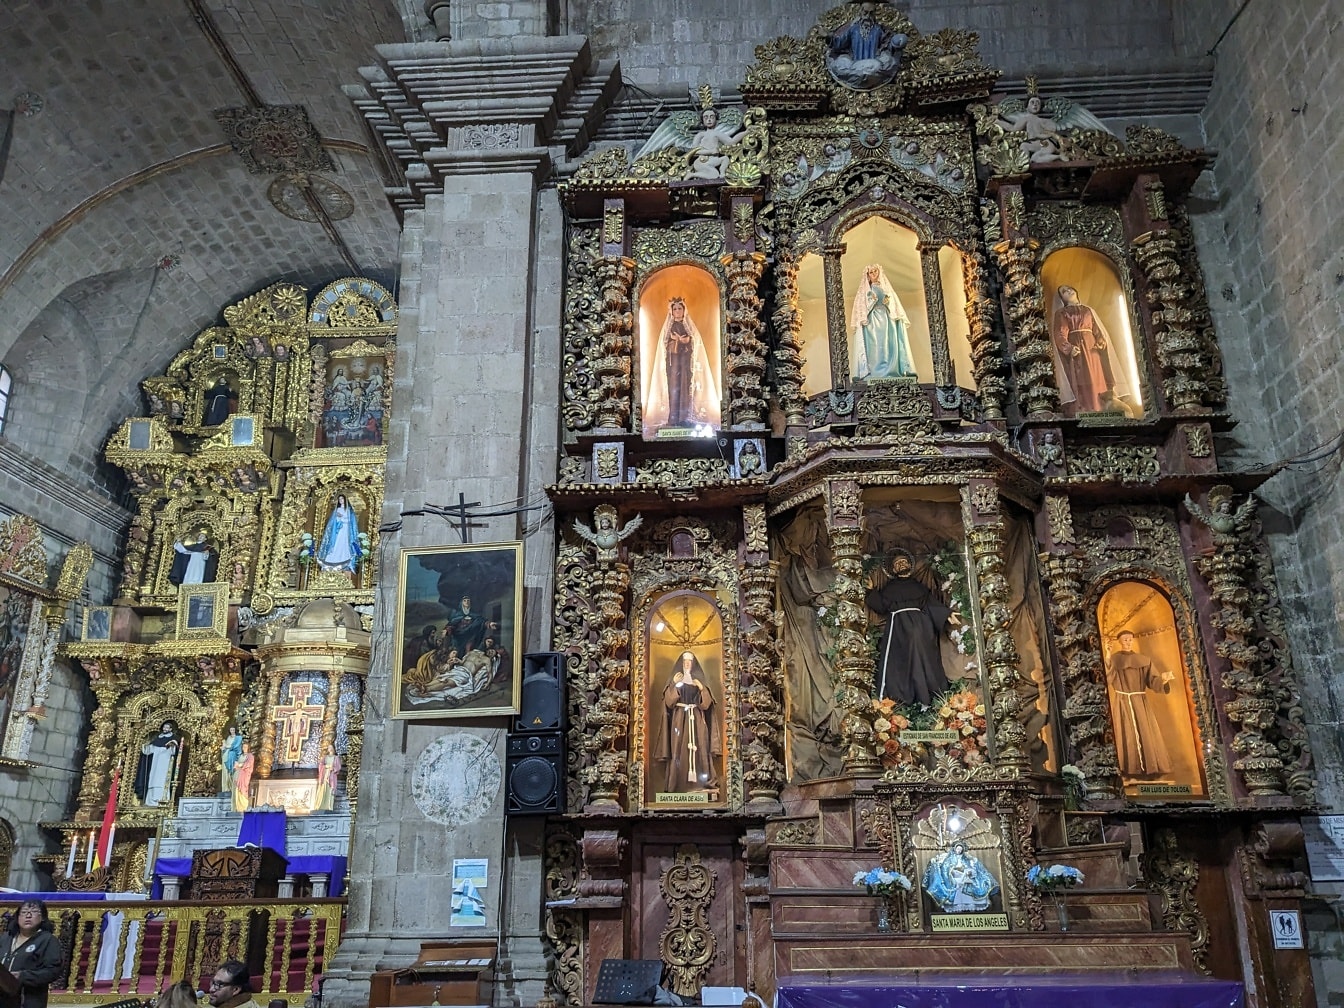 Kirkon sisustus, jossa on koristeltu alttari, jossa on pyhimysten patsaita perinteiseen latinalaisamerikkalaiseen tyyliin